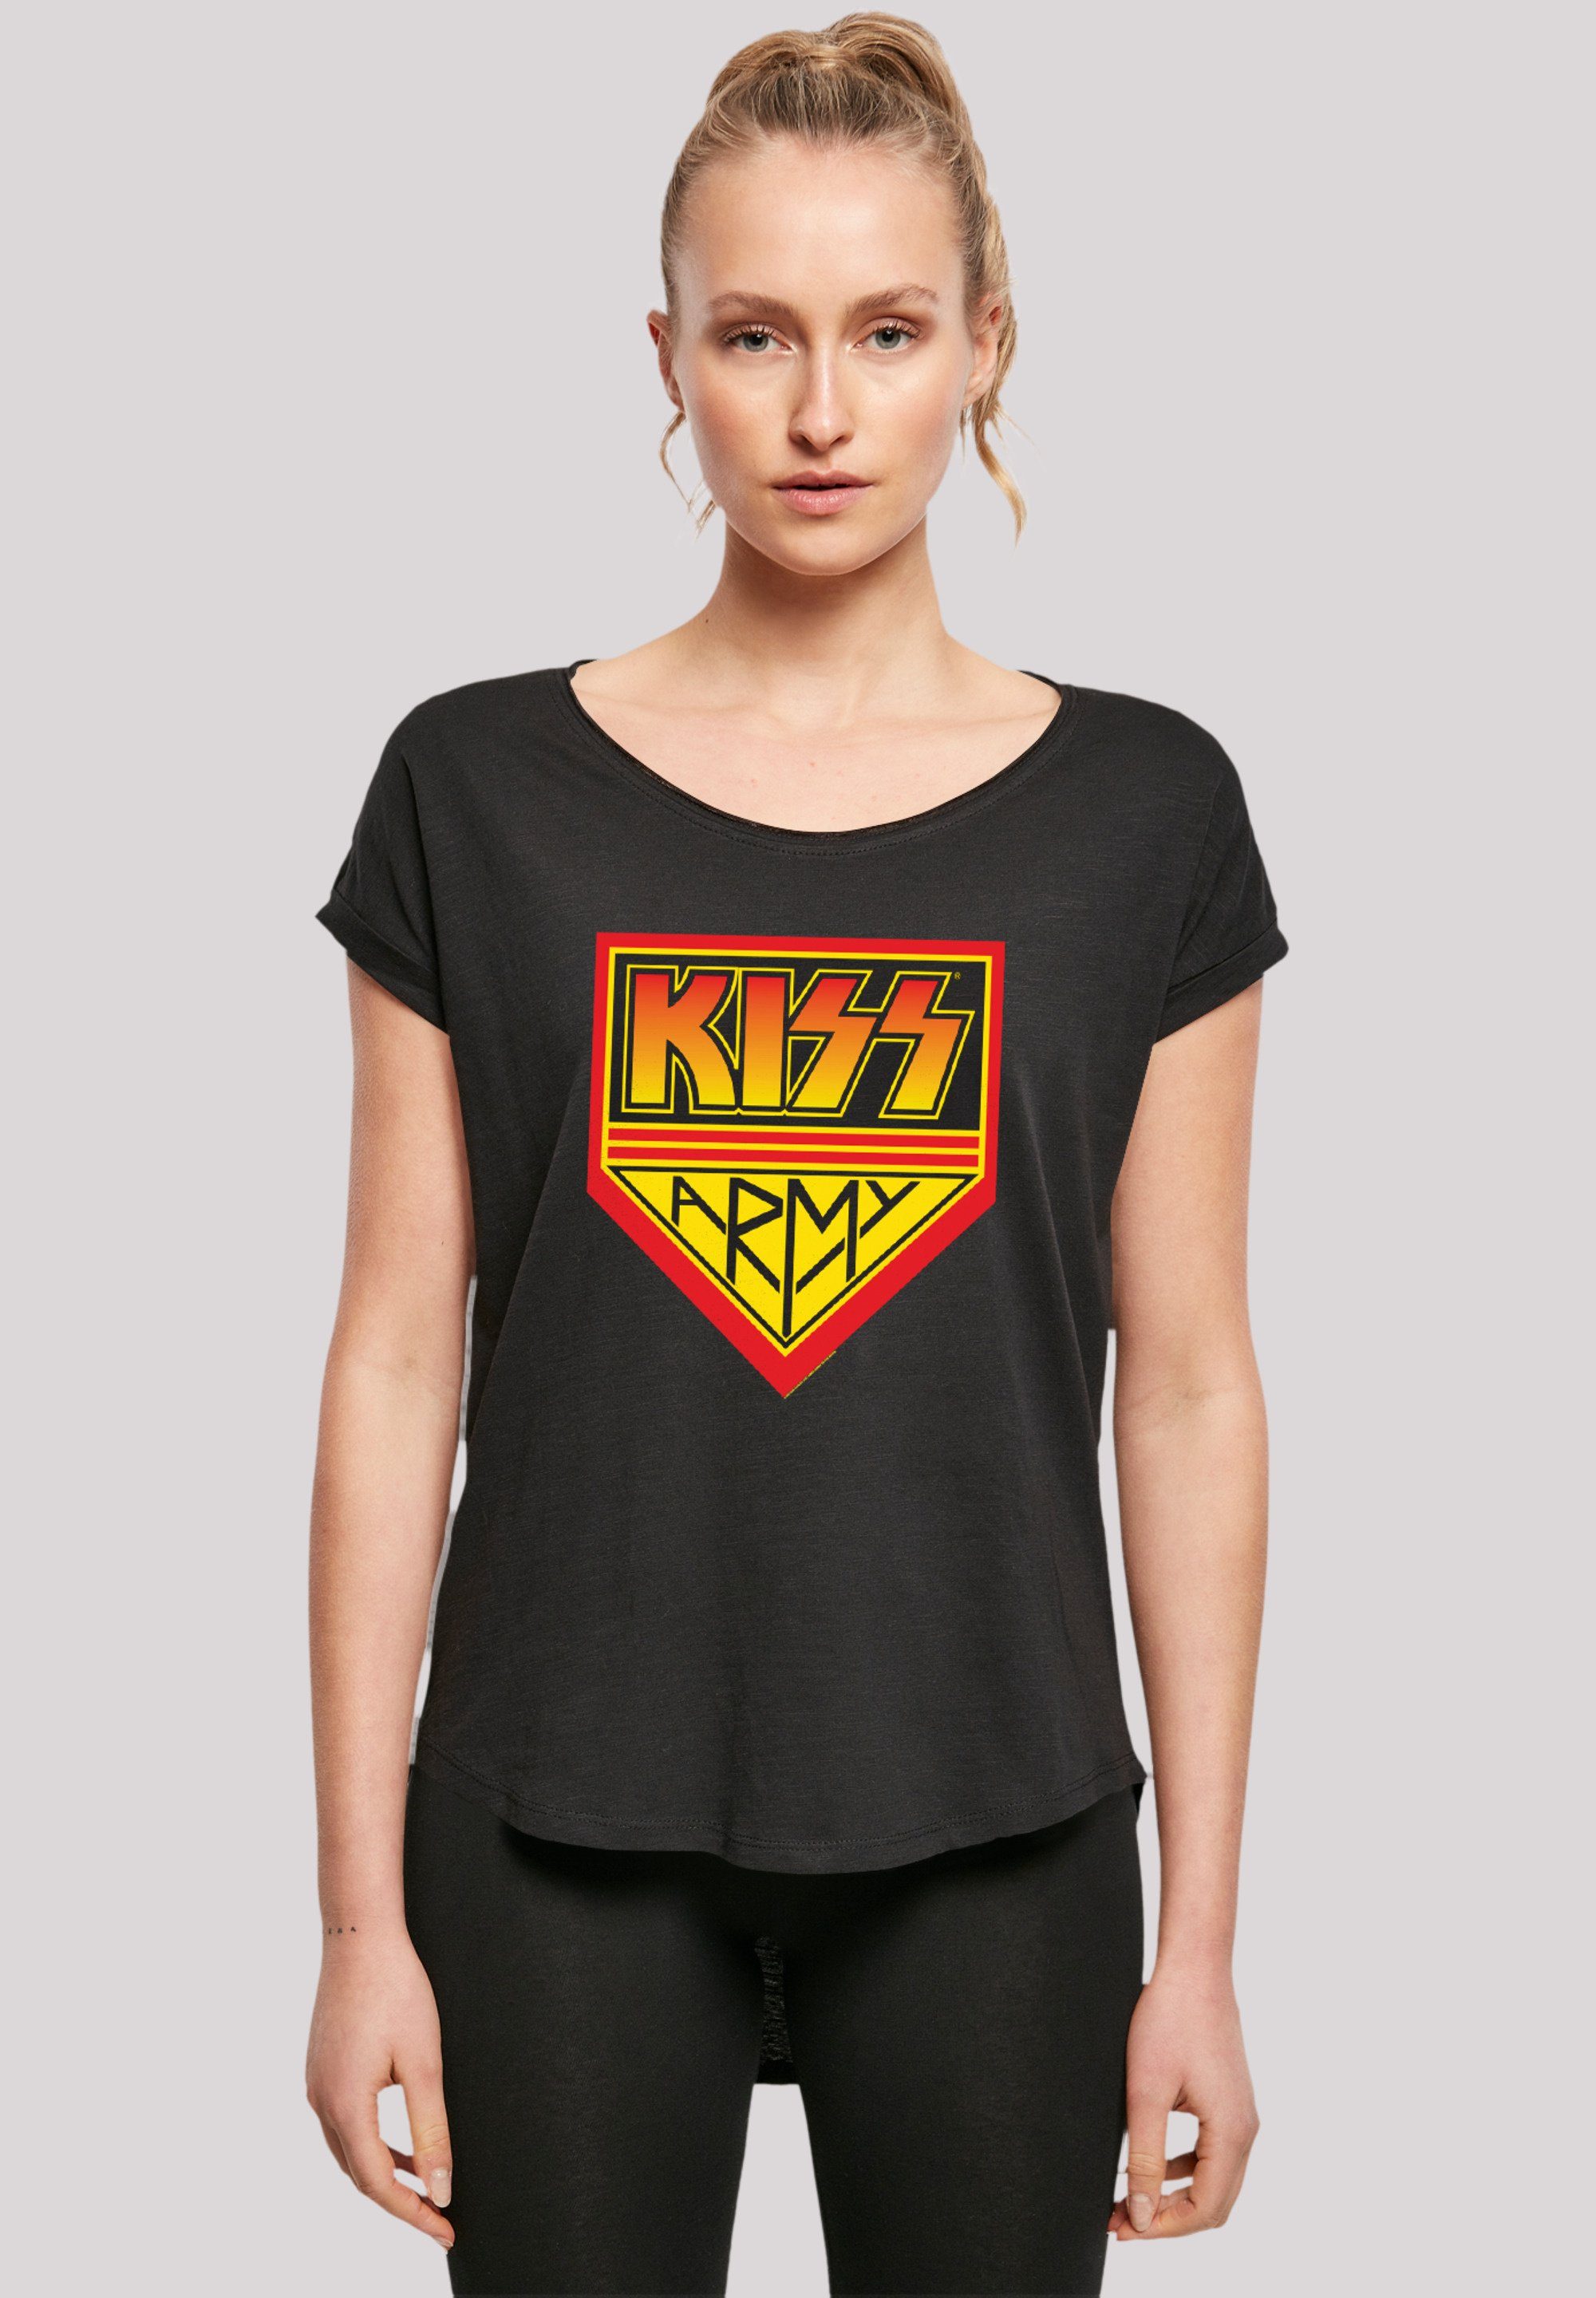 Rock Premium By T-Shirt lang geschnittenes T-Shirt Kiss Logo Rock F4NT4STIC Qualität, Damen Off, Band Musik, extra Army Hinten